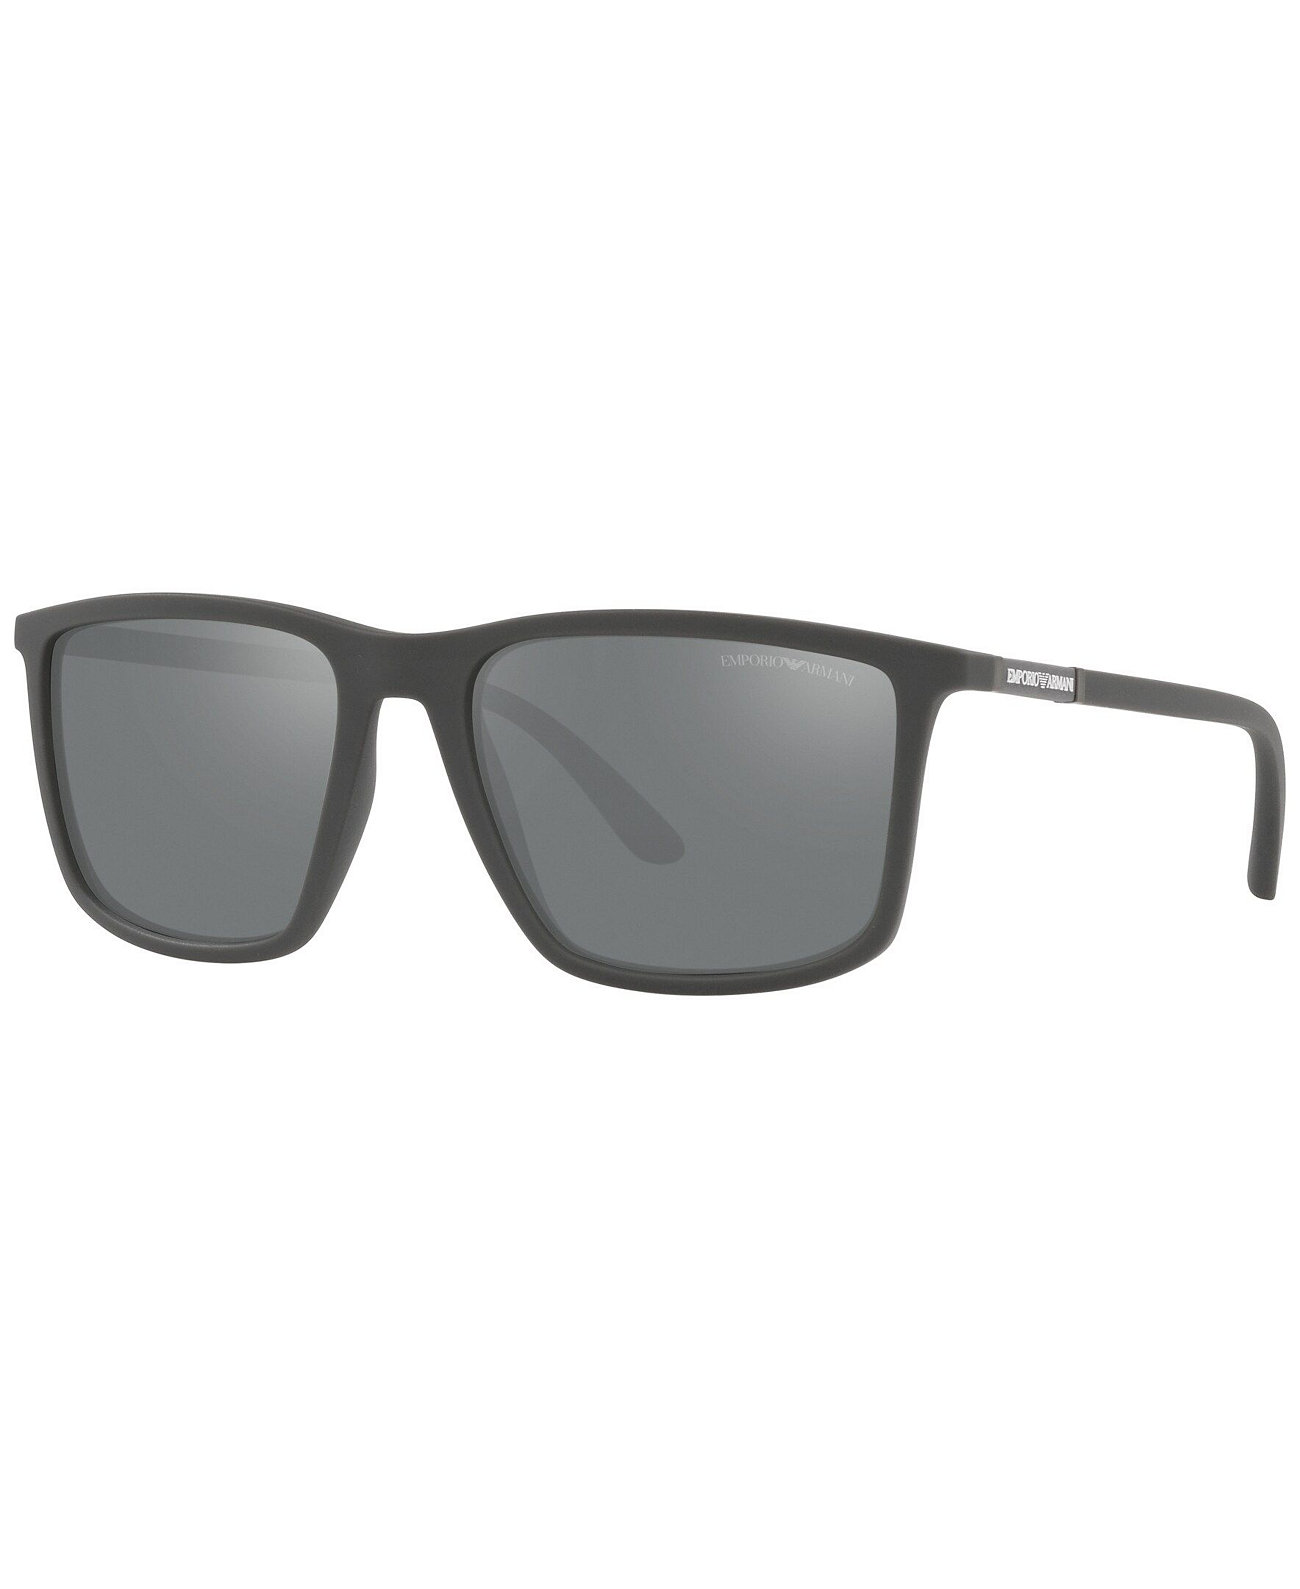 Мужские солнцезащитные очки, EA4161 57 Emporio Armani